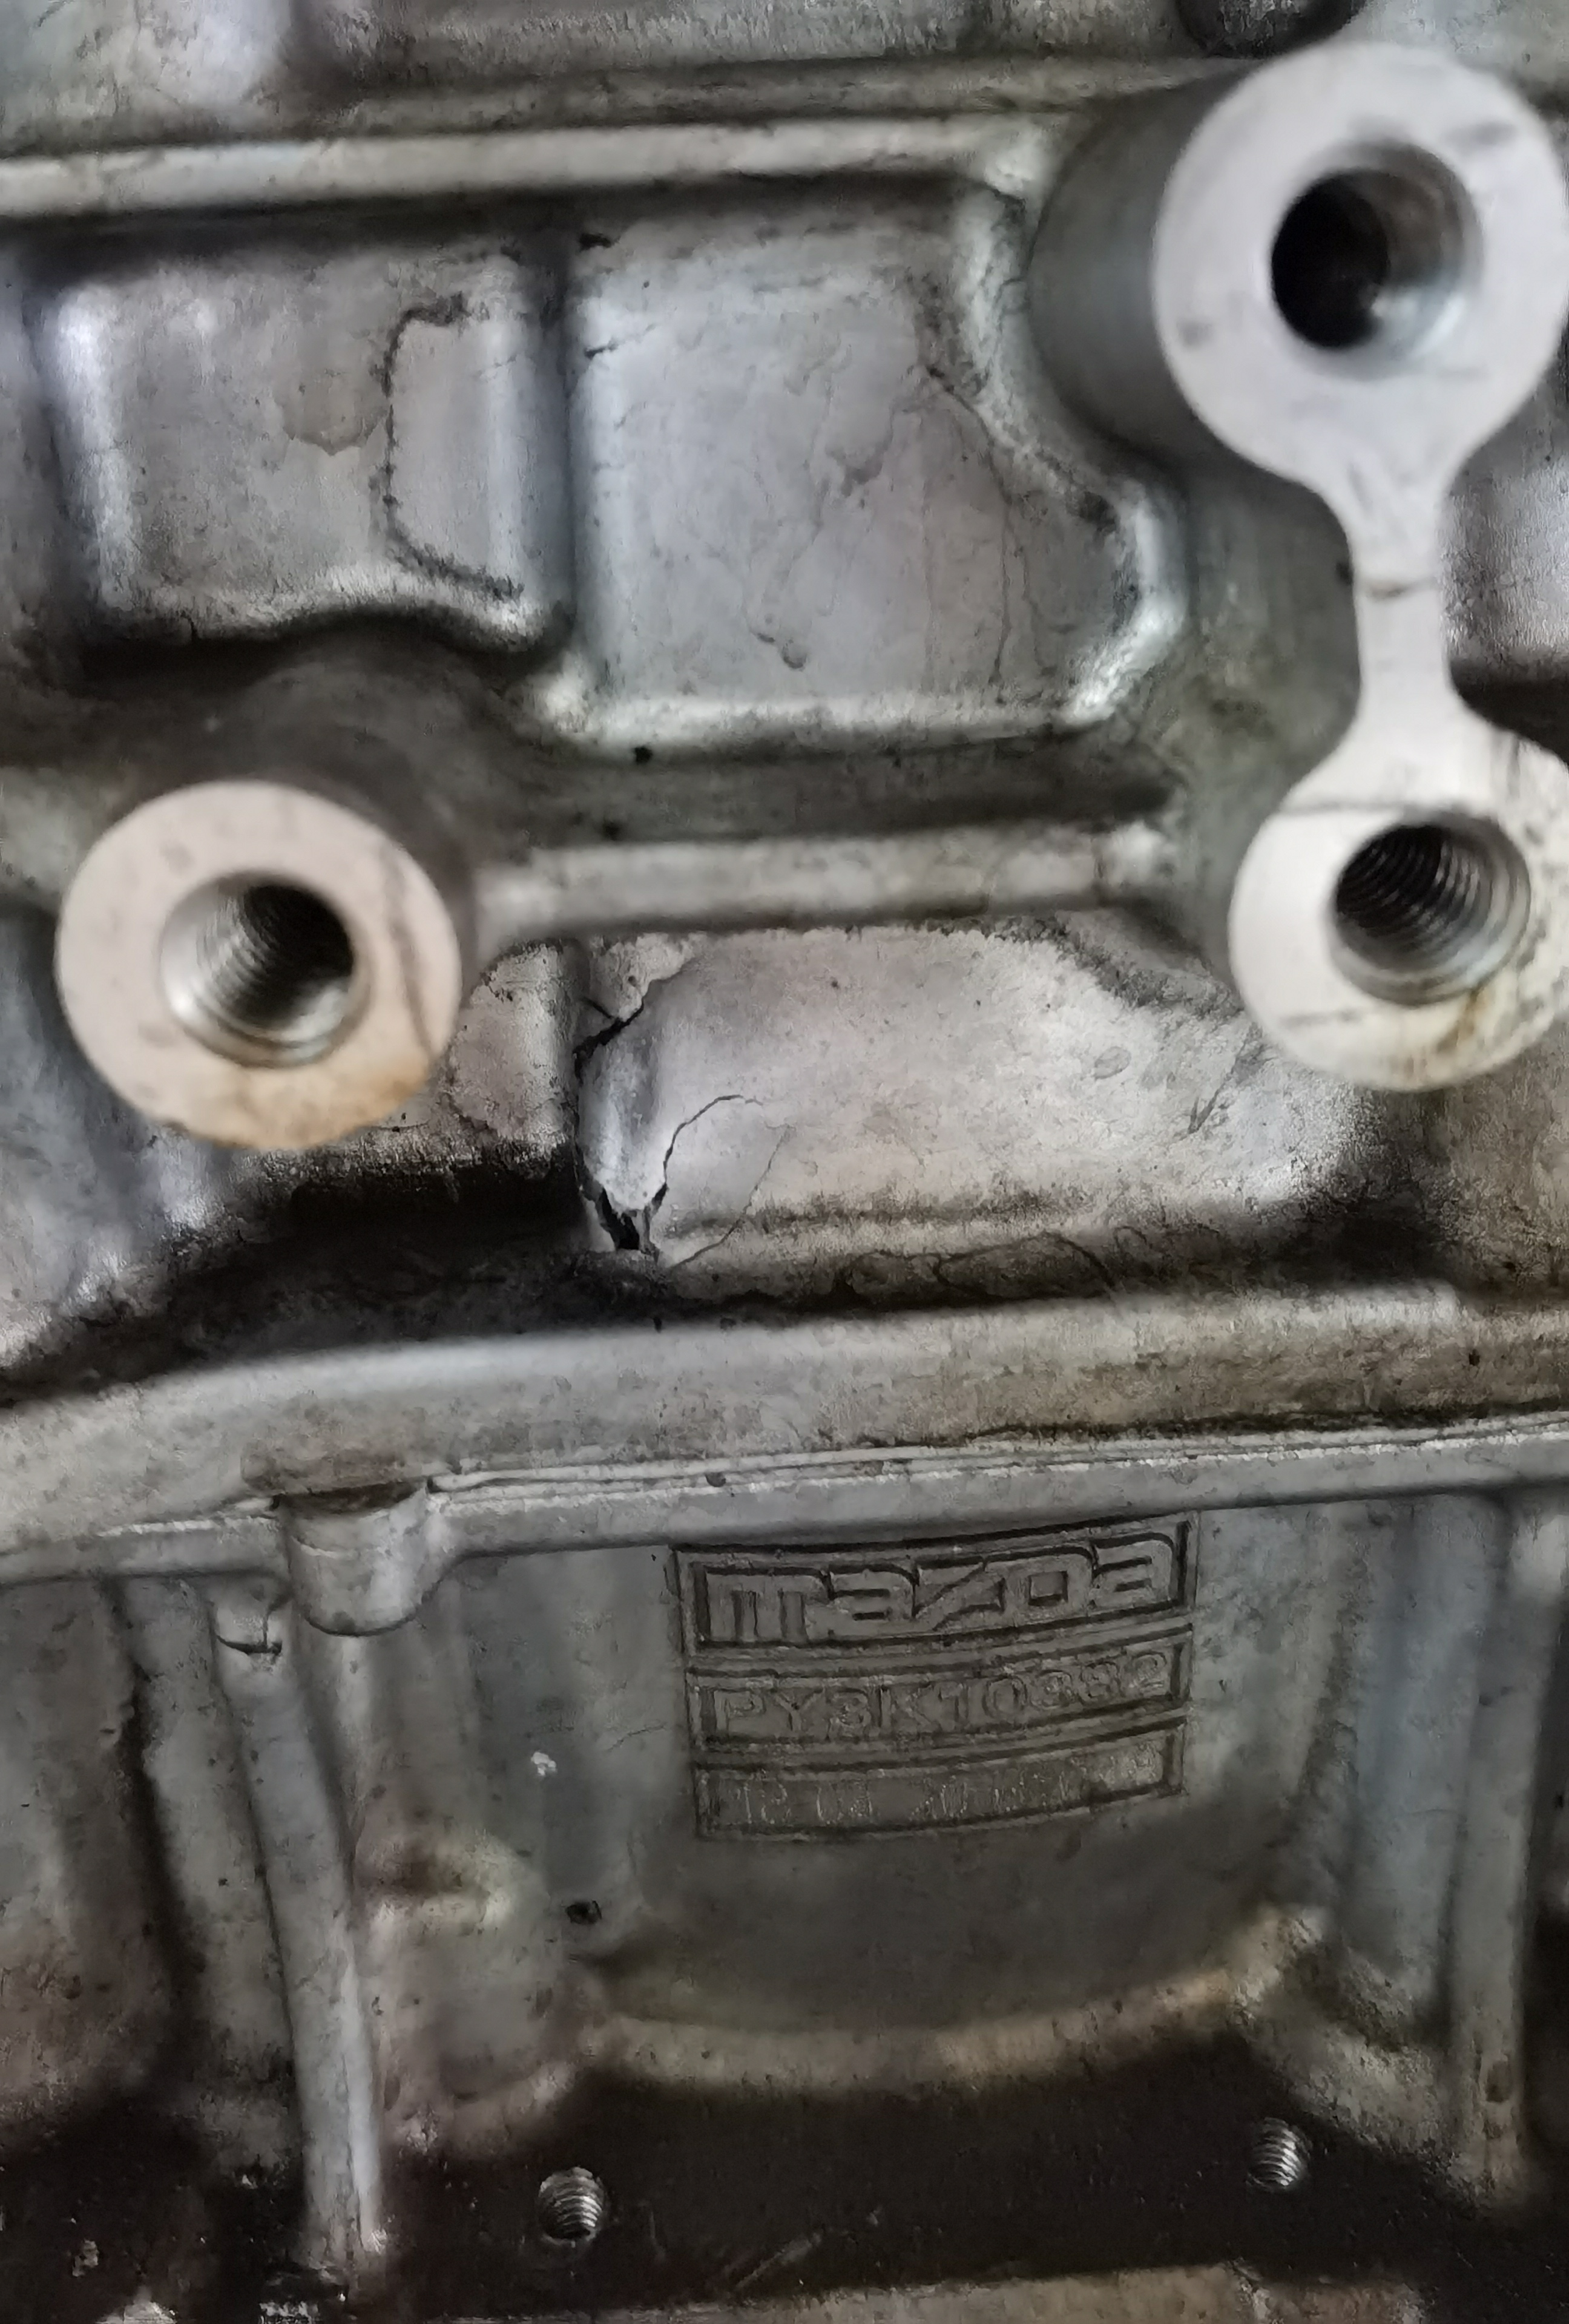 长安马自达CX-5车辆发动机螺丝断裂导致缸体破损出现漏油，厂家以过保为由不给予维修